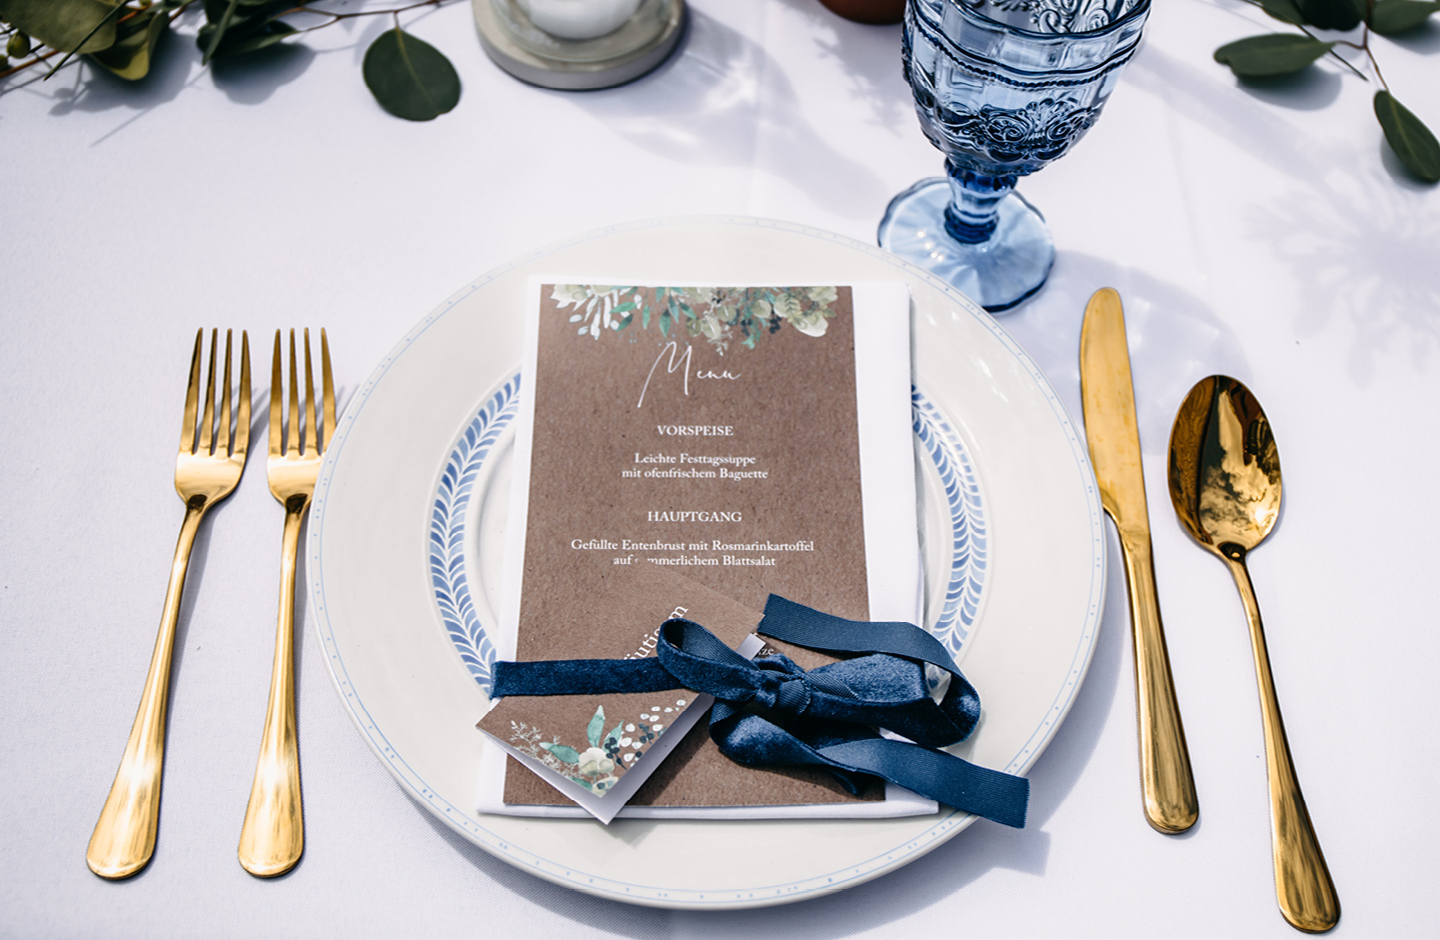 Menükarte & Namenskarte aus Kraftpapier mit Greenery Illustrationen liegen auf einem weißen Teller auf der Hochzeitstafel.